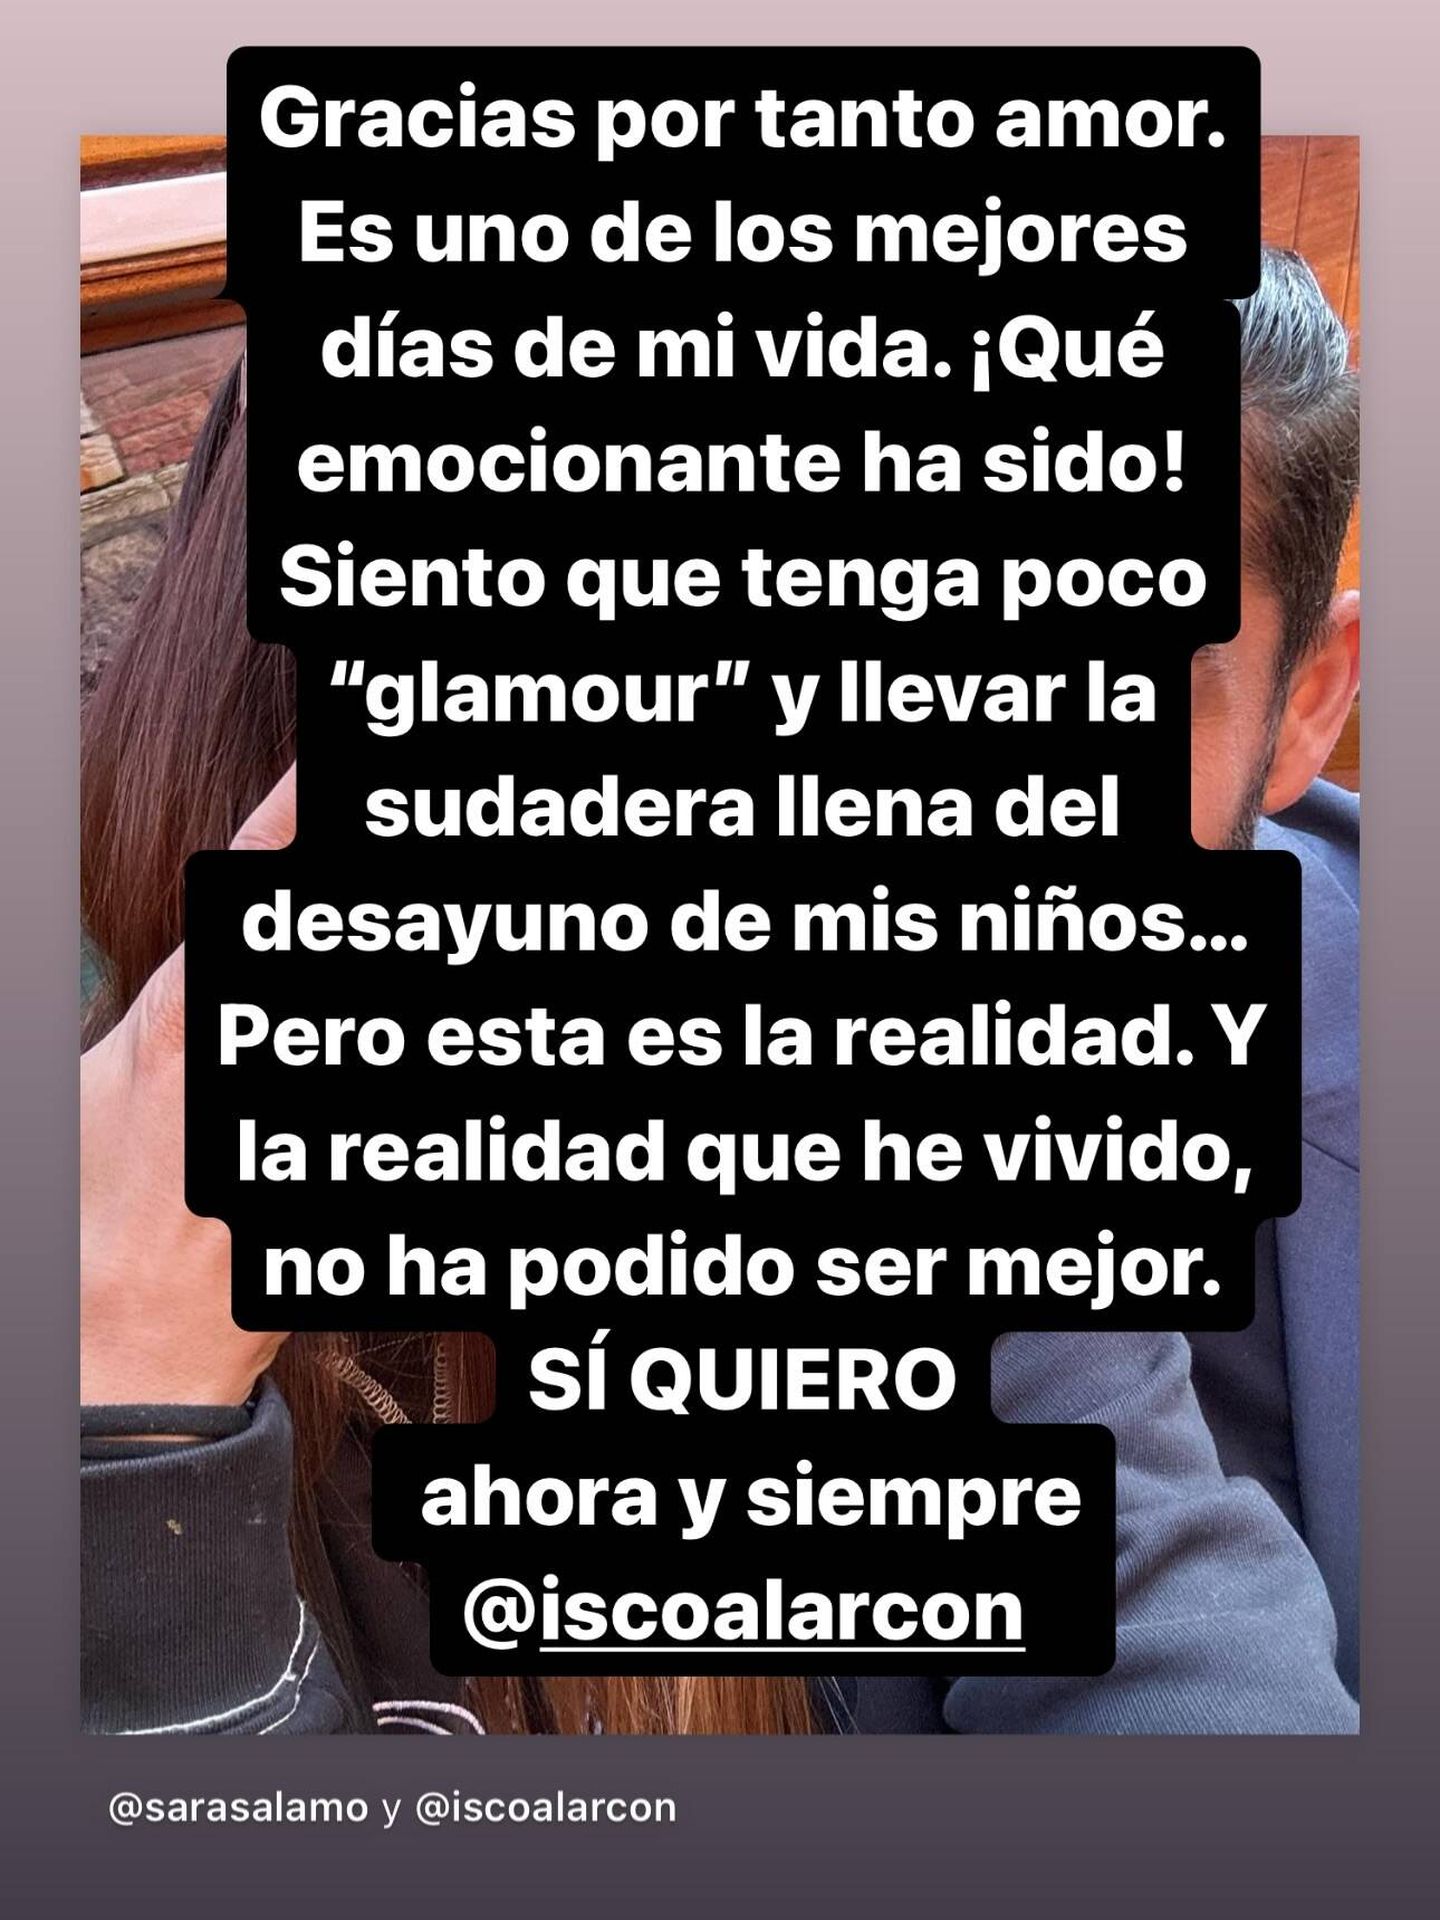 Story de Sara Sálamo en sus redes sociales. (Instagram/@sarasalamo)